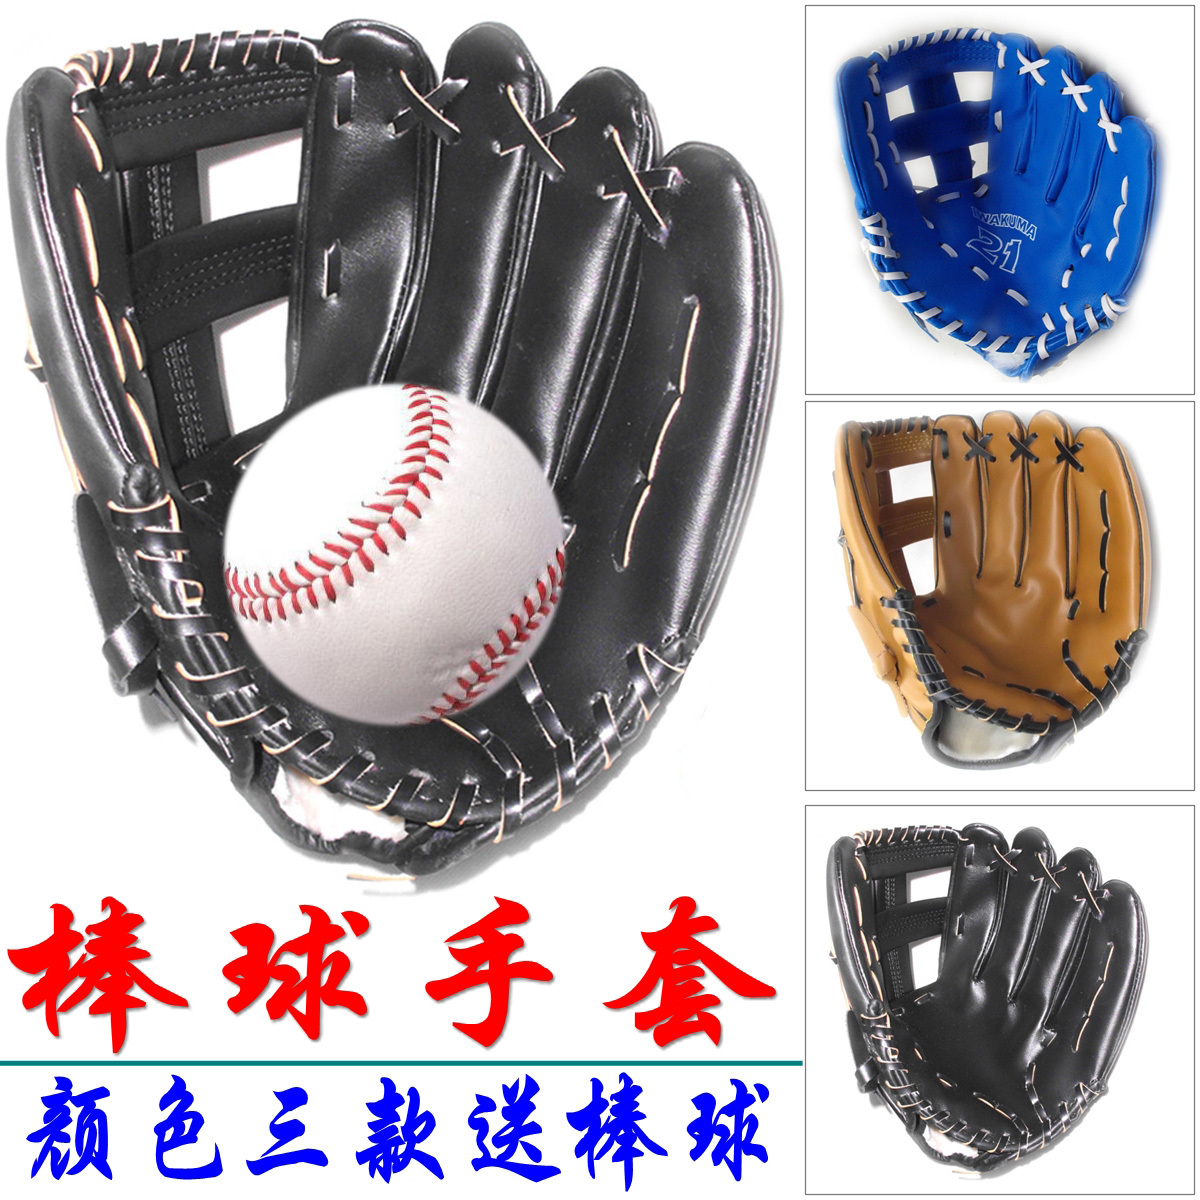 正品棒球加厚型棒球手套左手11.5—12.5买就送棒球一个